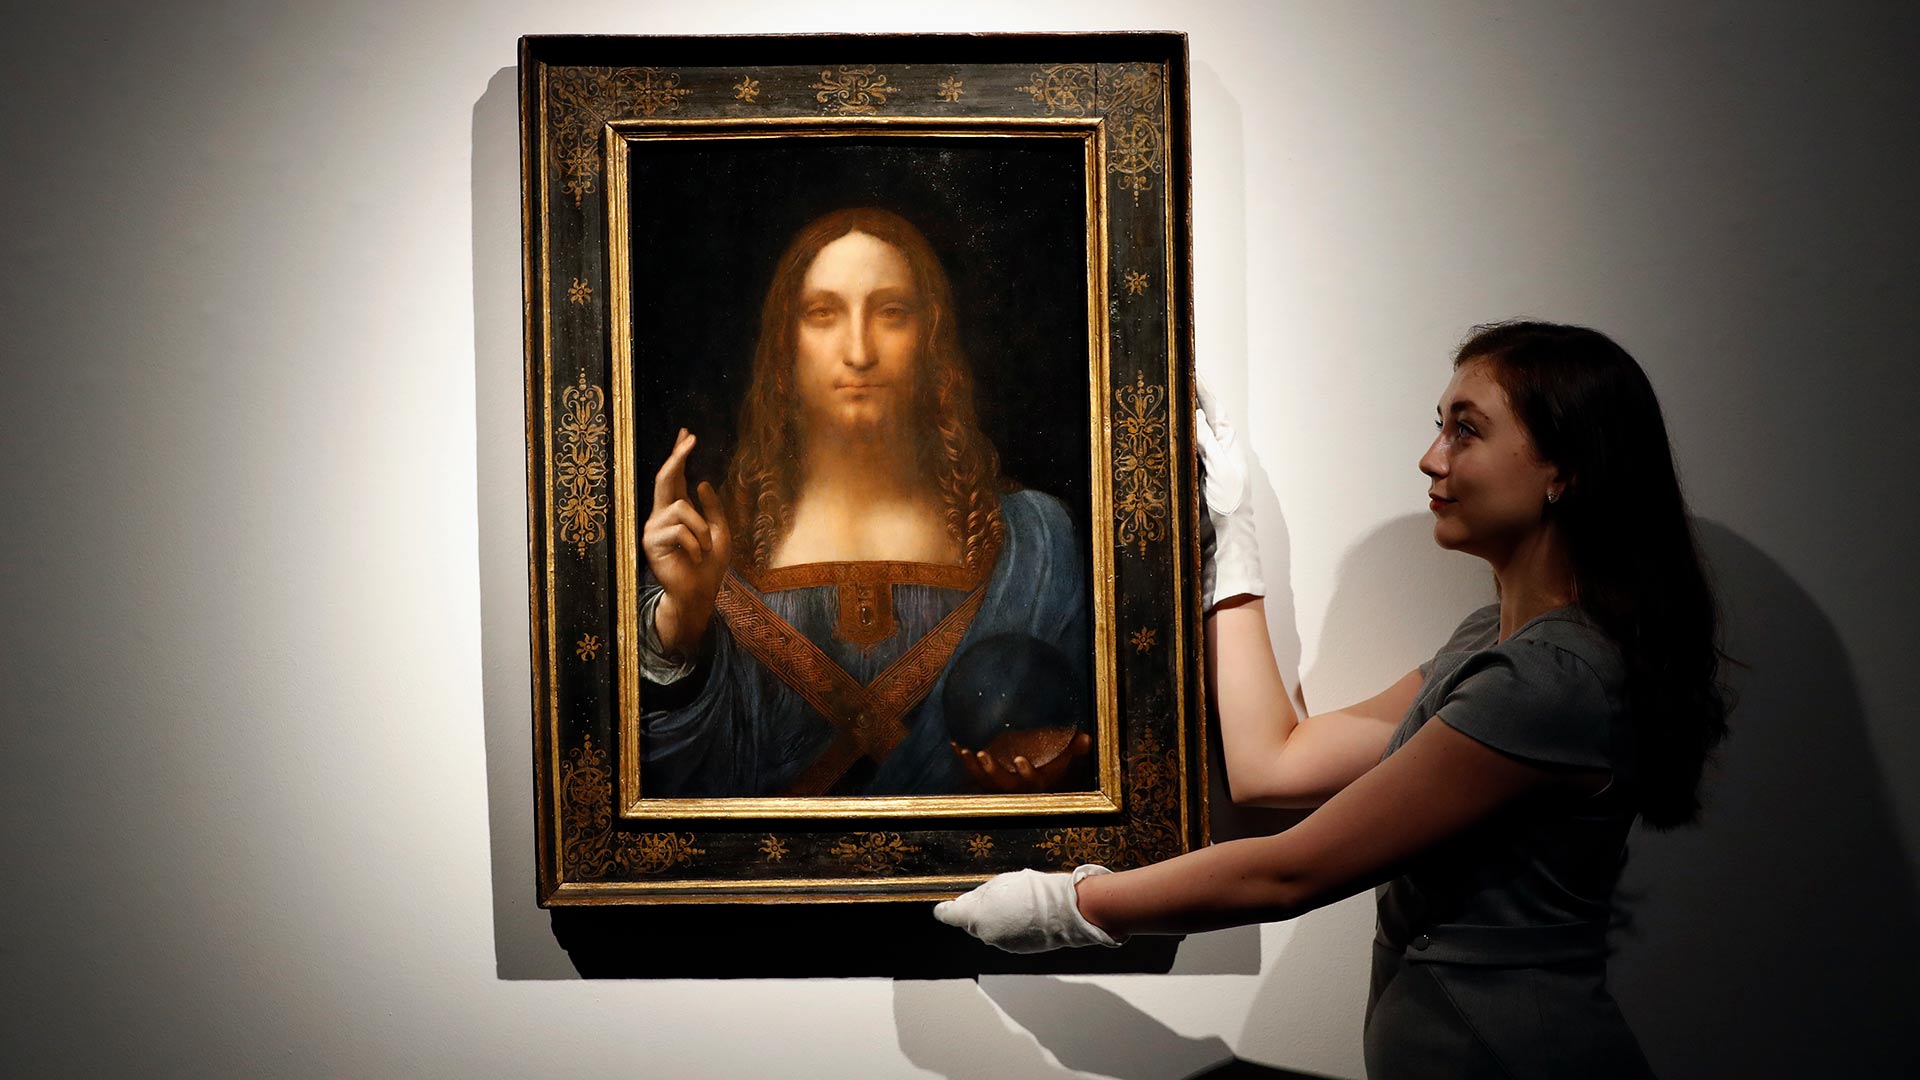 La obra perdida de Da Vinci, la pintura más cara del mundo, podría estar en el yate de un príncipe saudí